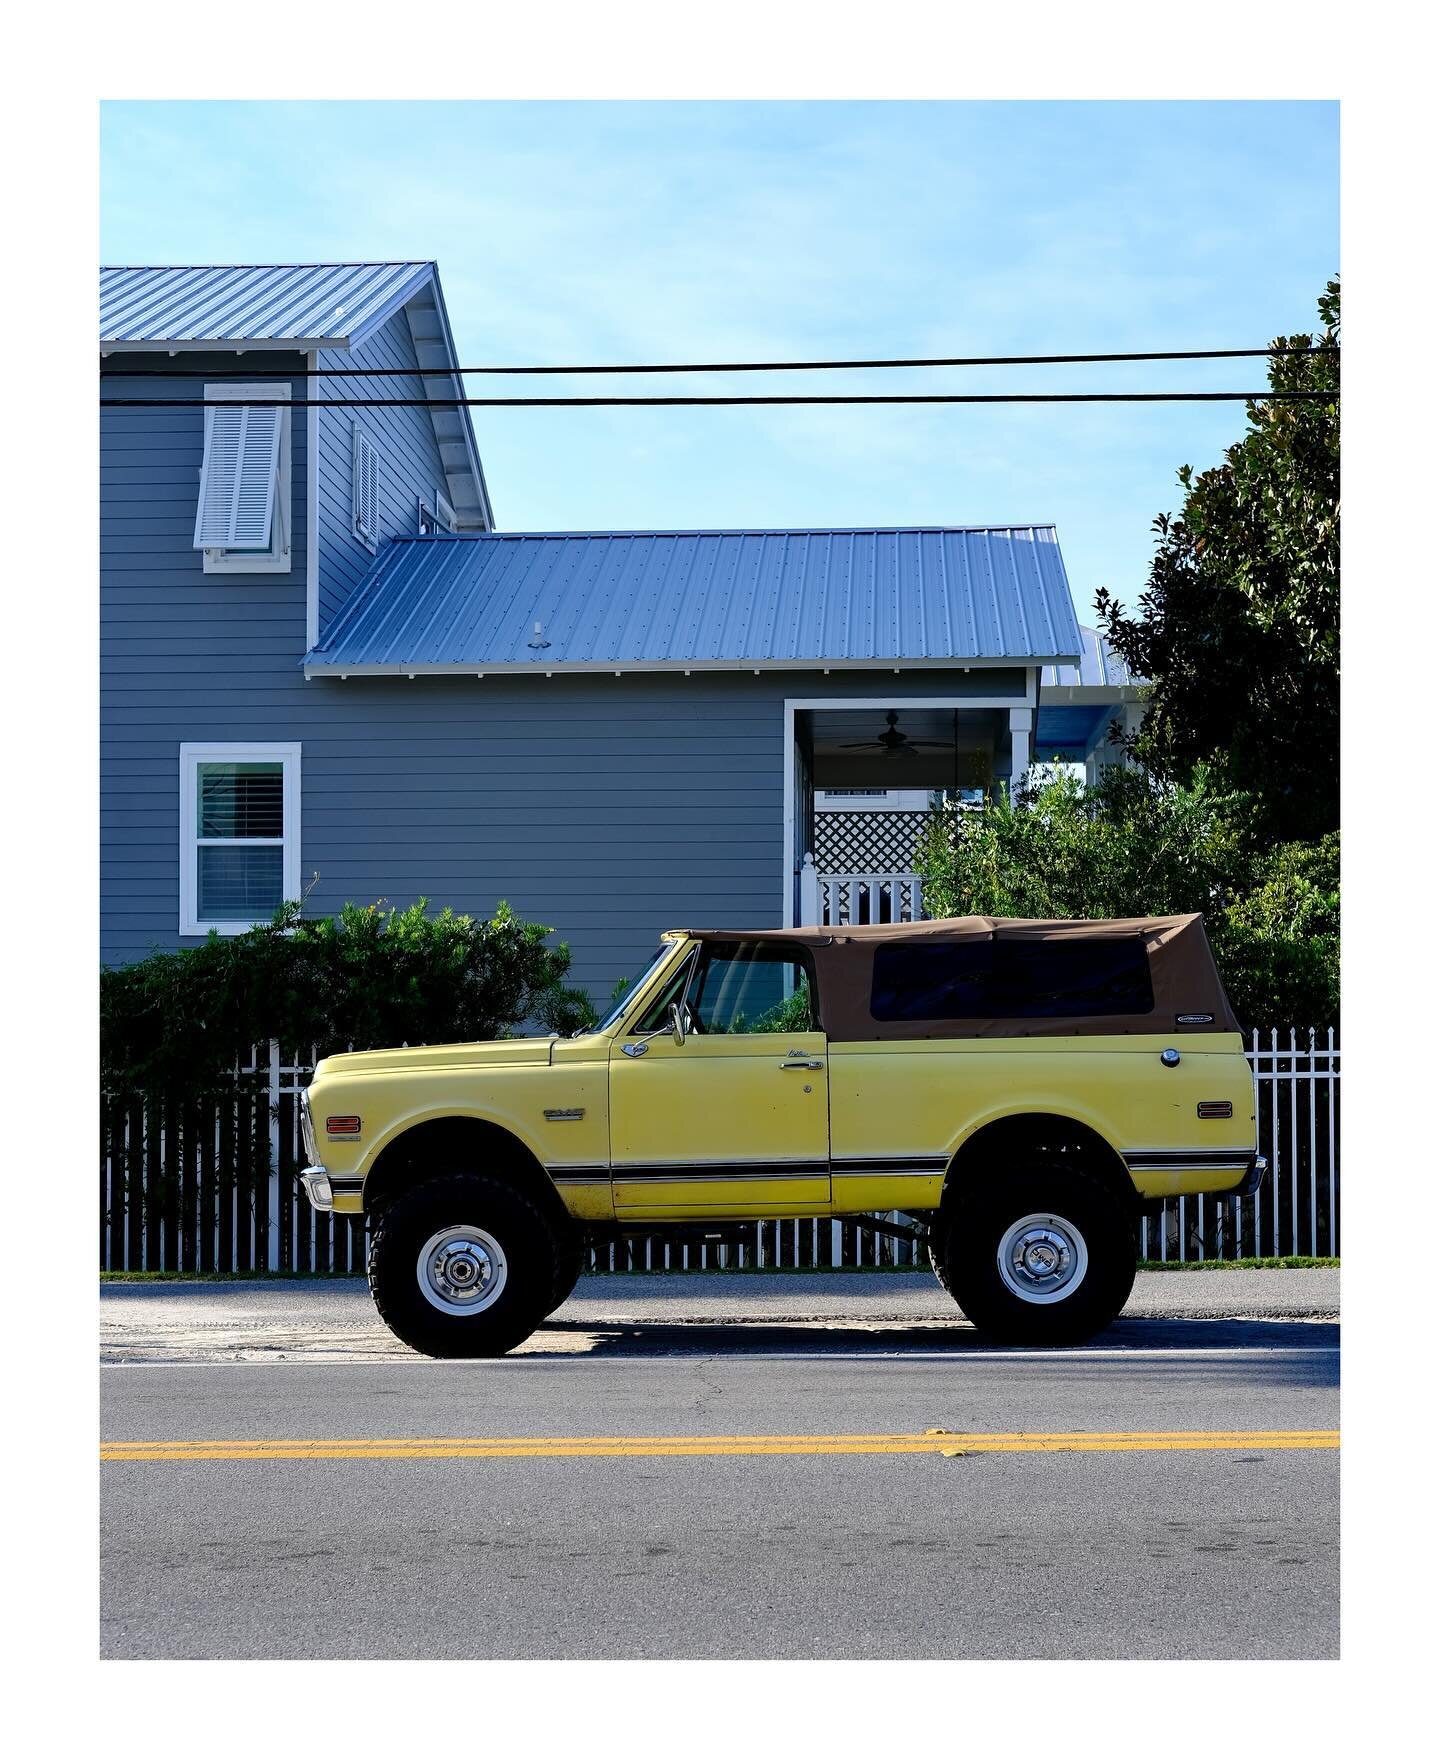 GMC 🏁 

@gmc #carsof30a #camberevents #30a #gmc #gmctruck #beachlife #classicdriver #classictruck #santarosabeachflorida #cars #trucks #gmctrucksdaily #beachvibes